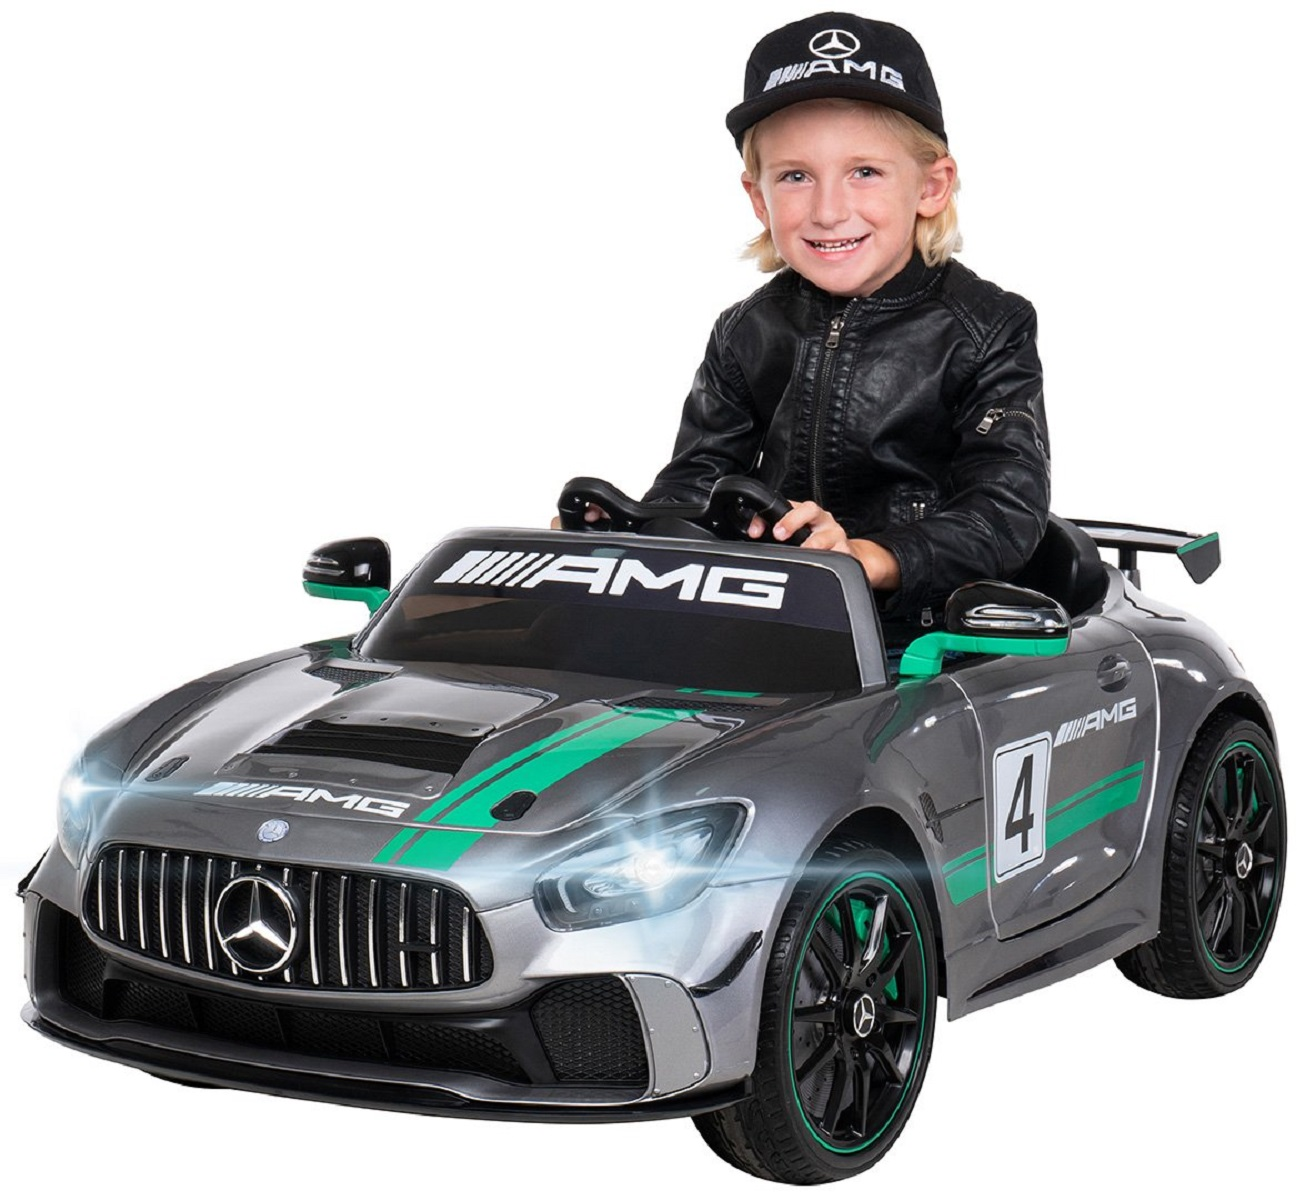 Mercedes GT4 ACTIONBIKES MOTORS Sport AMG Elektroauto Edition